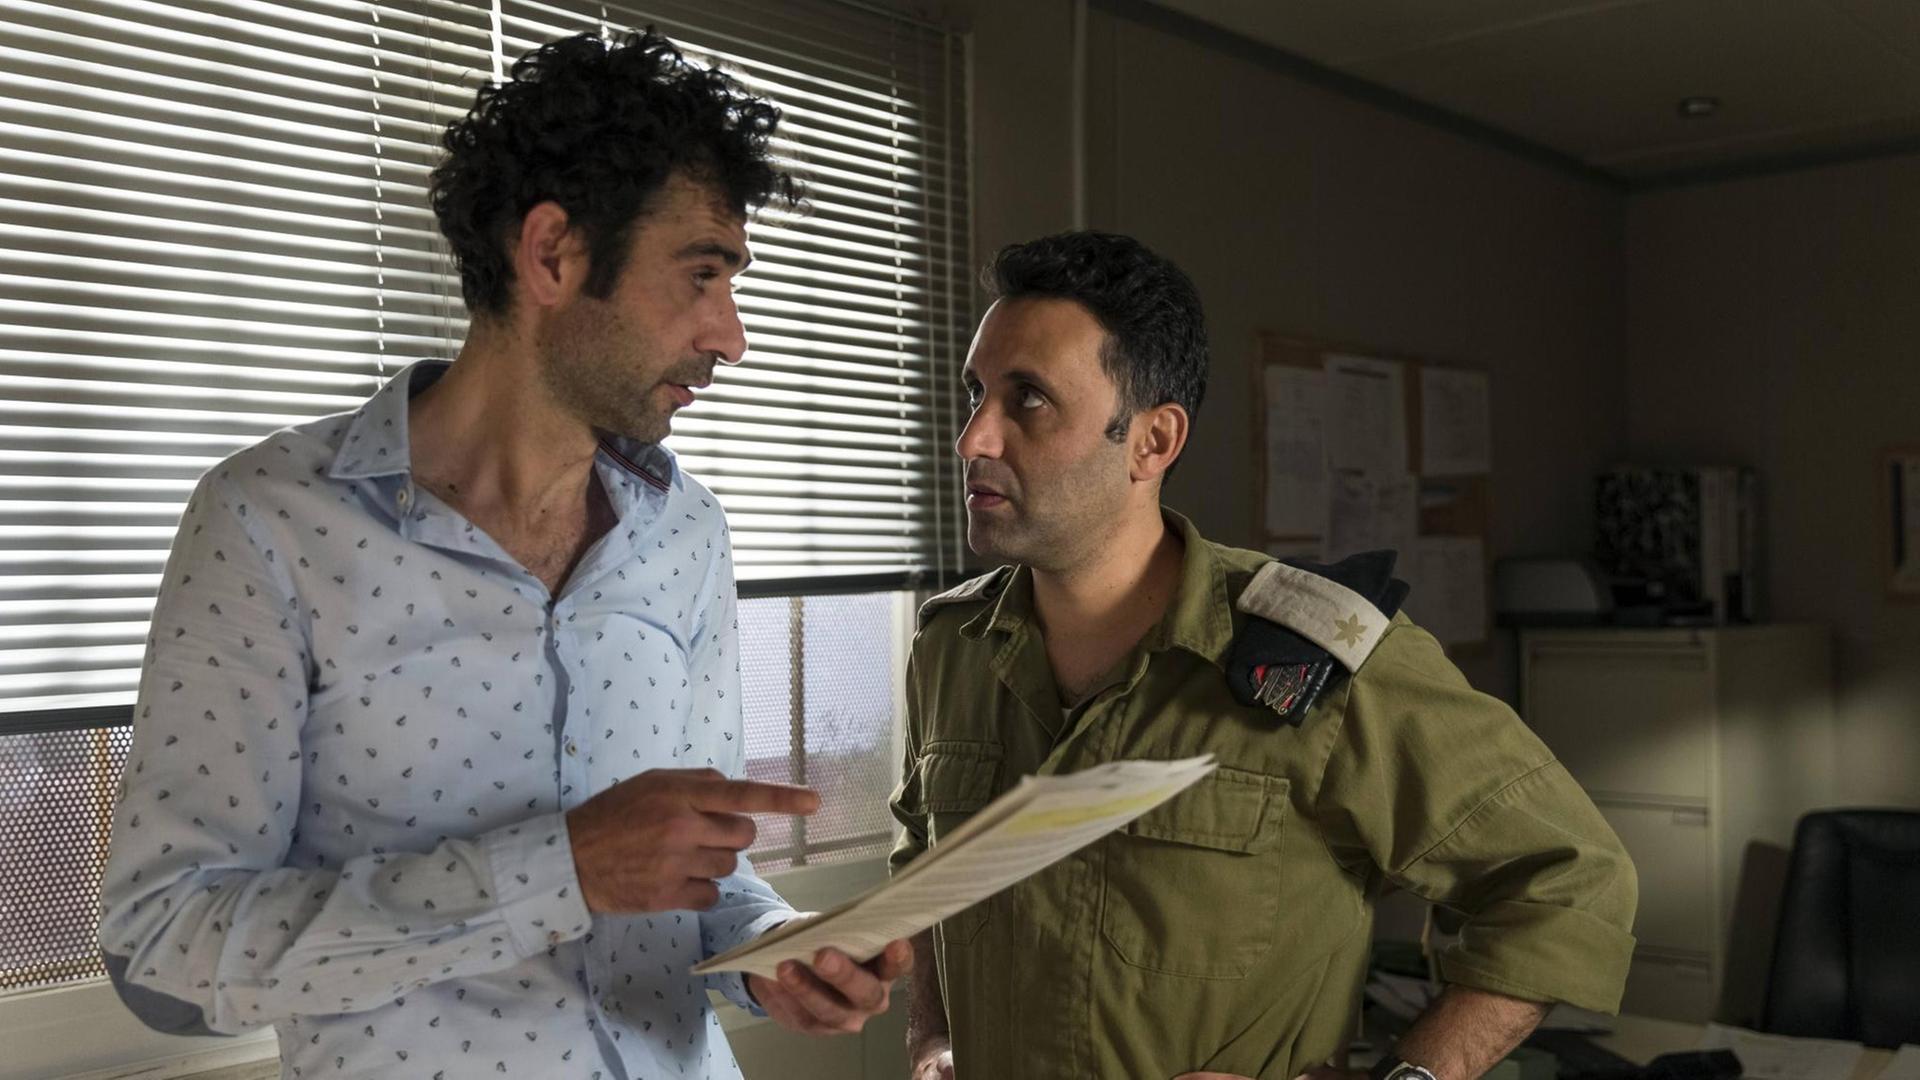 Drehbuchautor Salam (Kais Nashif) und der israelische Kommandeur Assi (Yaniv Biton) diskutieren über das Drehbuch